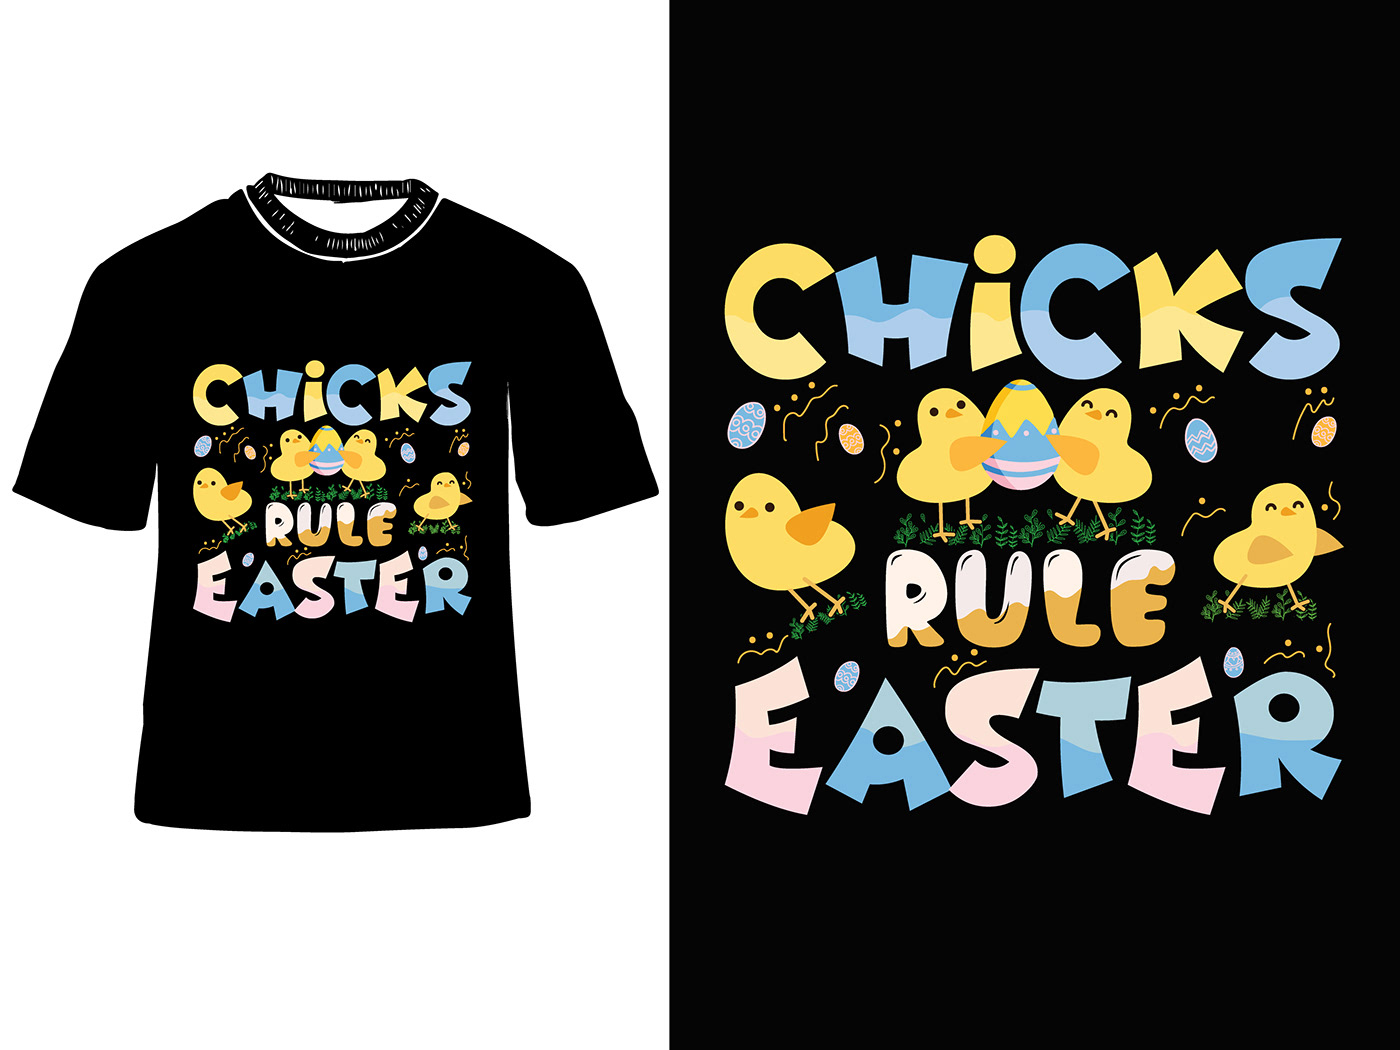 Hoppy Easter, Easter day t-shirt design, amazing new t-shirt design